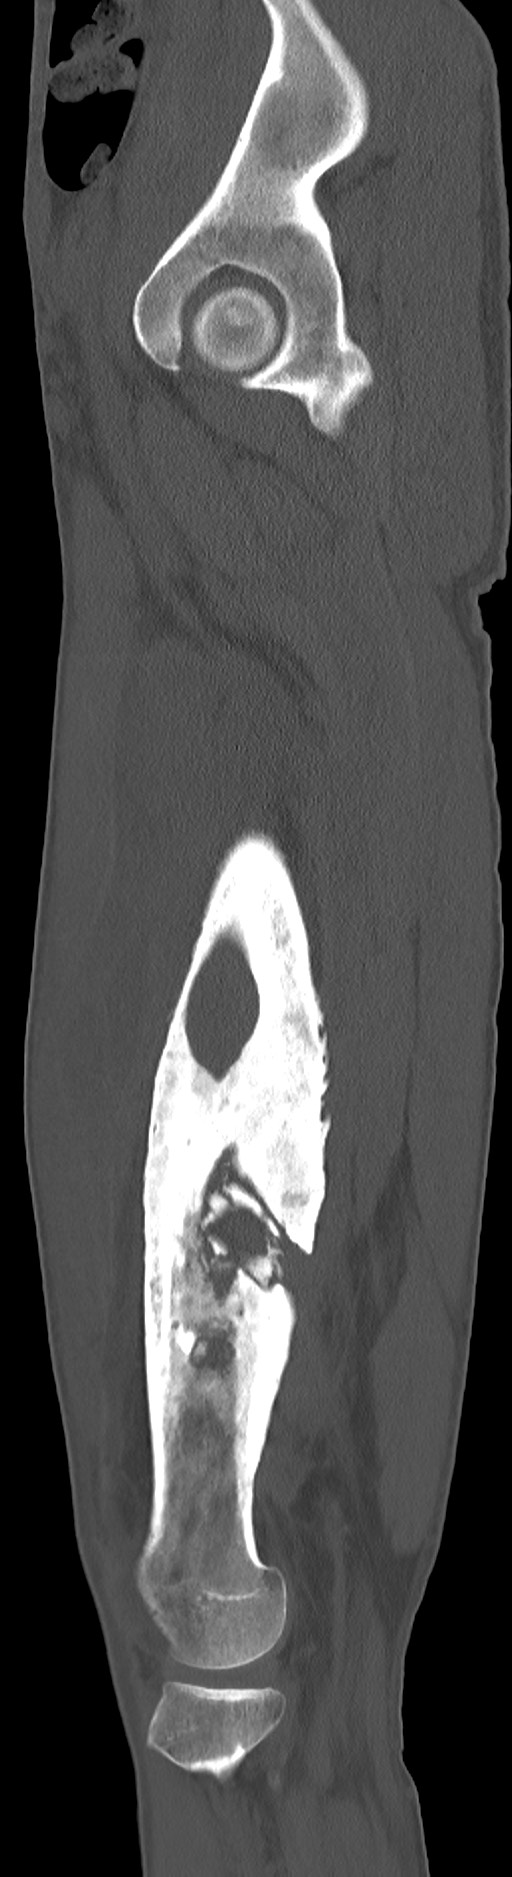 Chronic osteomyelitis (with sequestrum) (Radiopaedia 74813-85822 C 79).jpg